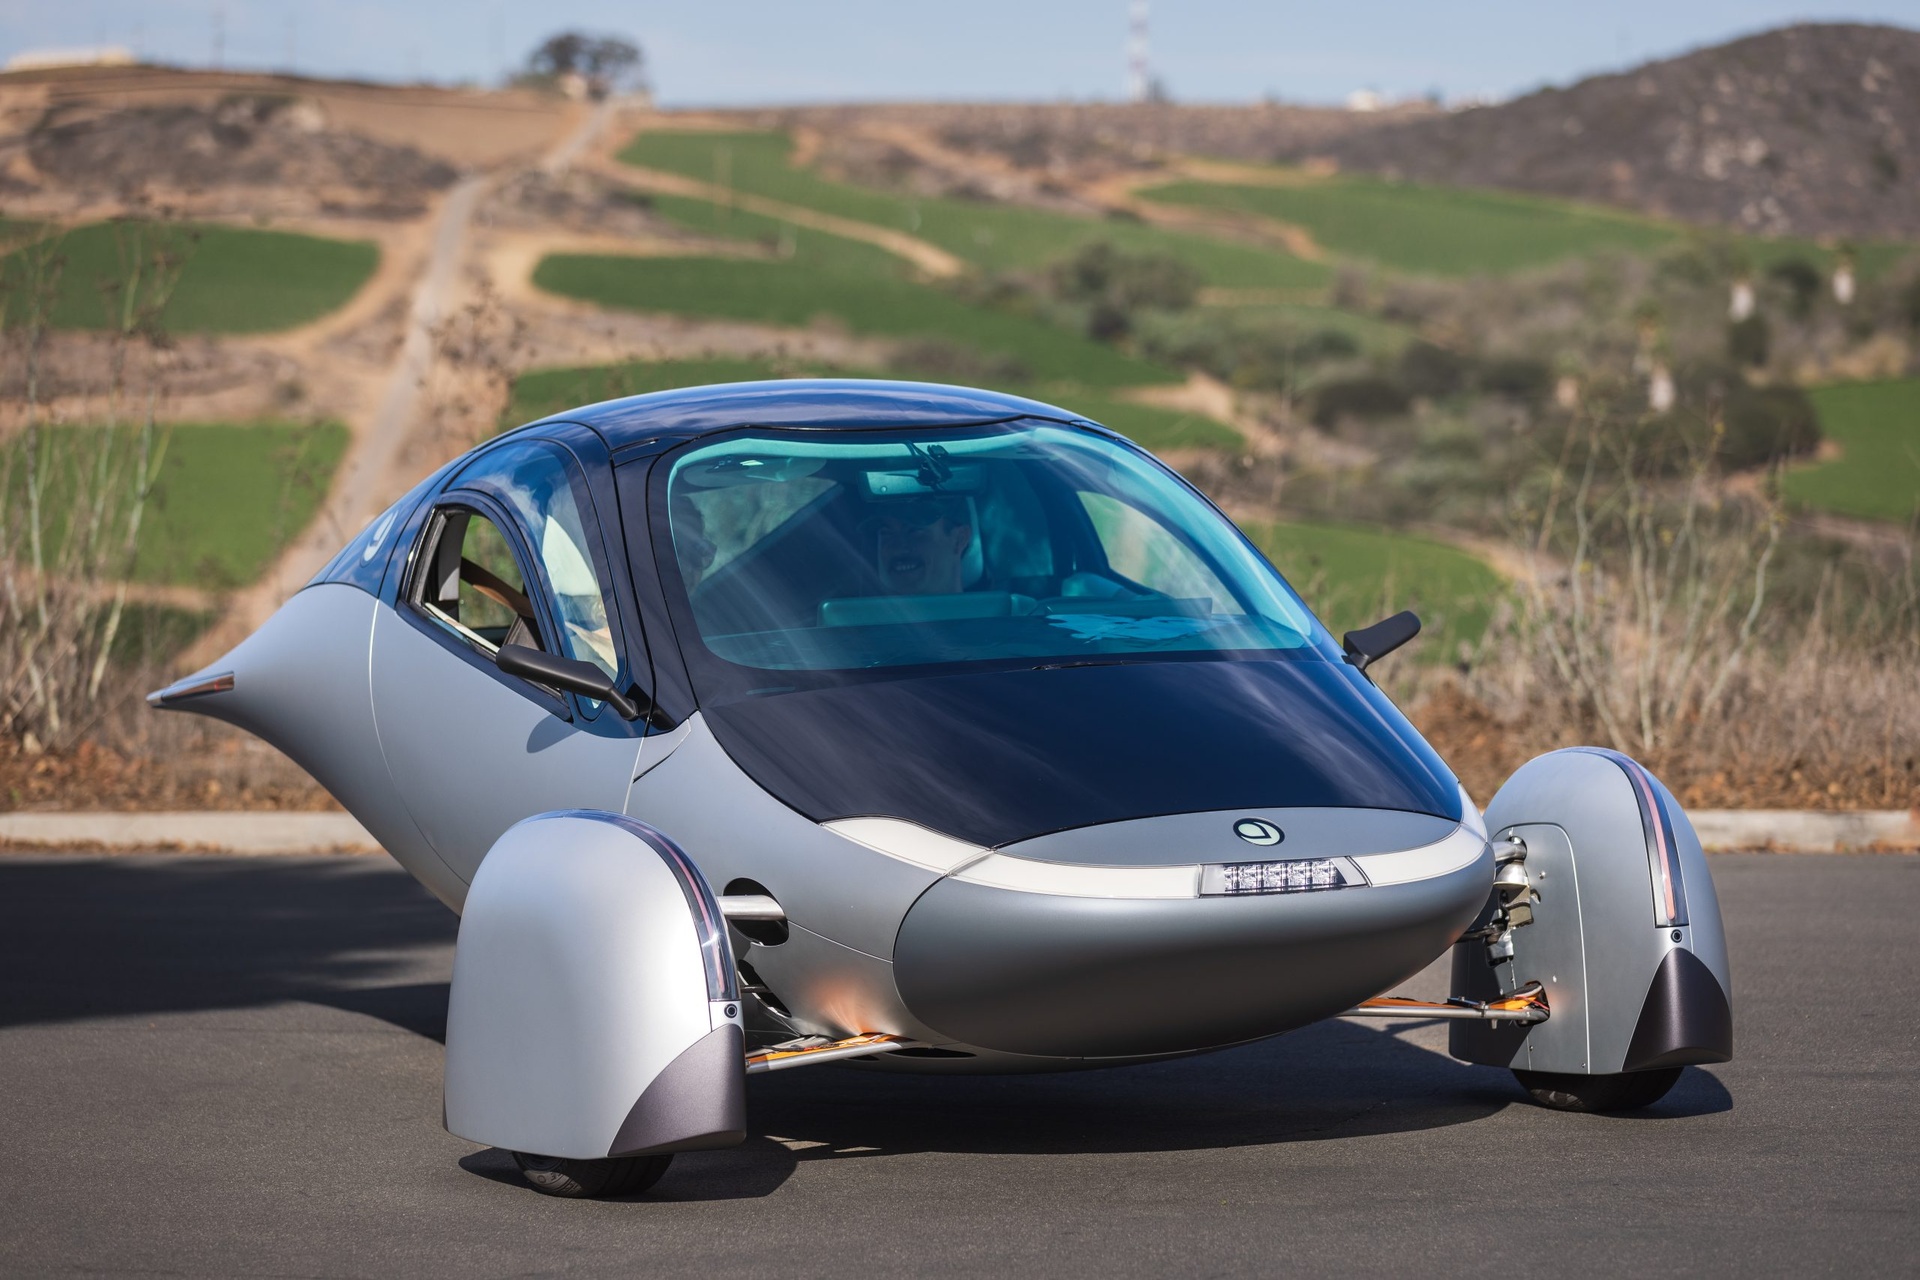 Mașină solară: Aptera Delta este cea mai durabilă mașină din lume, cu o autonomie de 1600 km pe baterie și 70 km pe energie solară